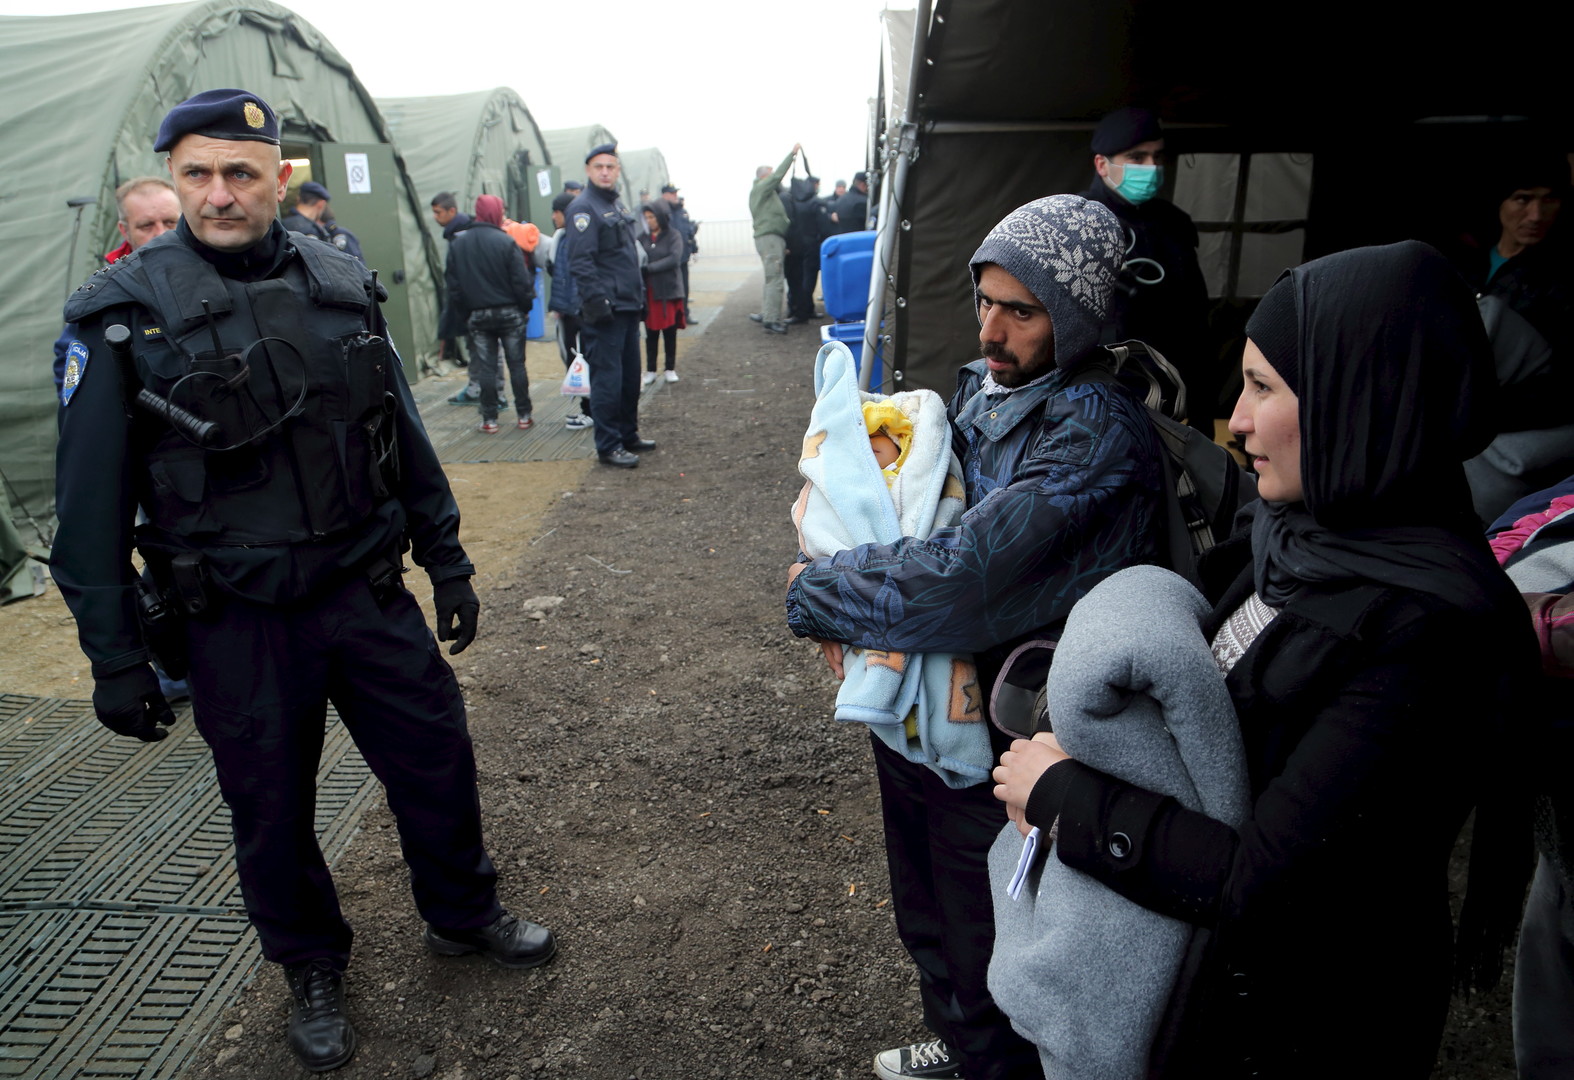 L'hiver approche et les migrants du camp de réfugiés de Slavonski brod essaient de s'emmitoufler en attendant leur train ou en tentant de passer l'enregistrement.